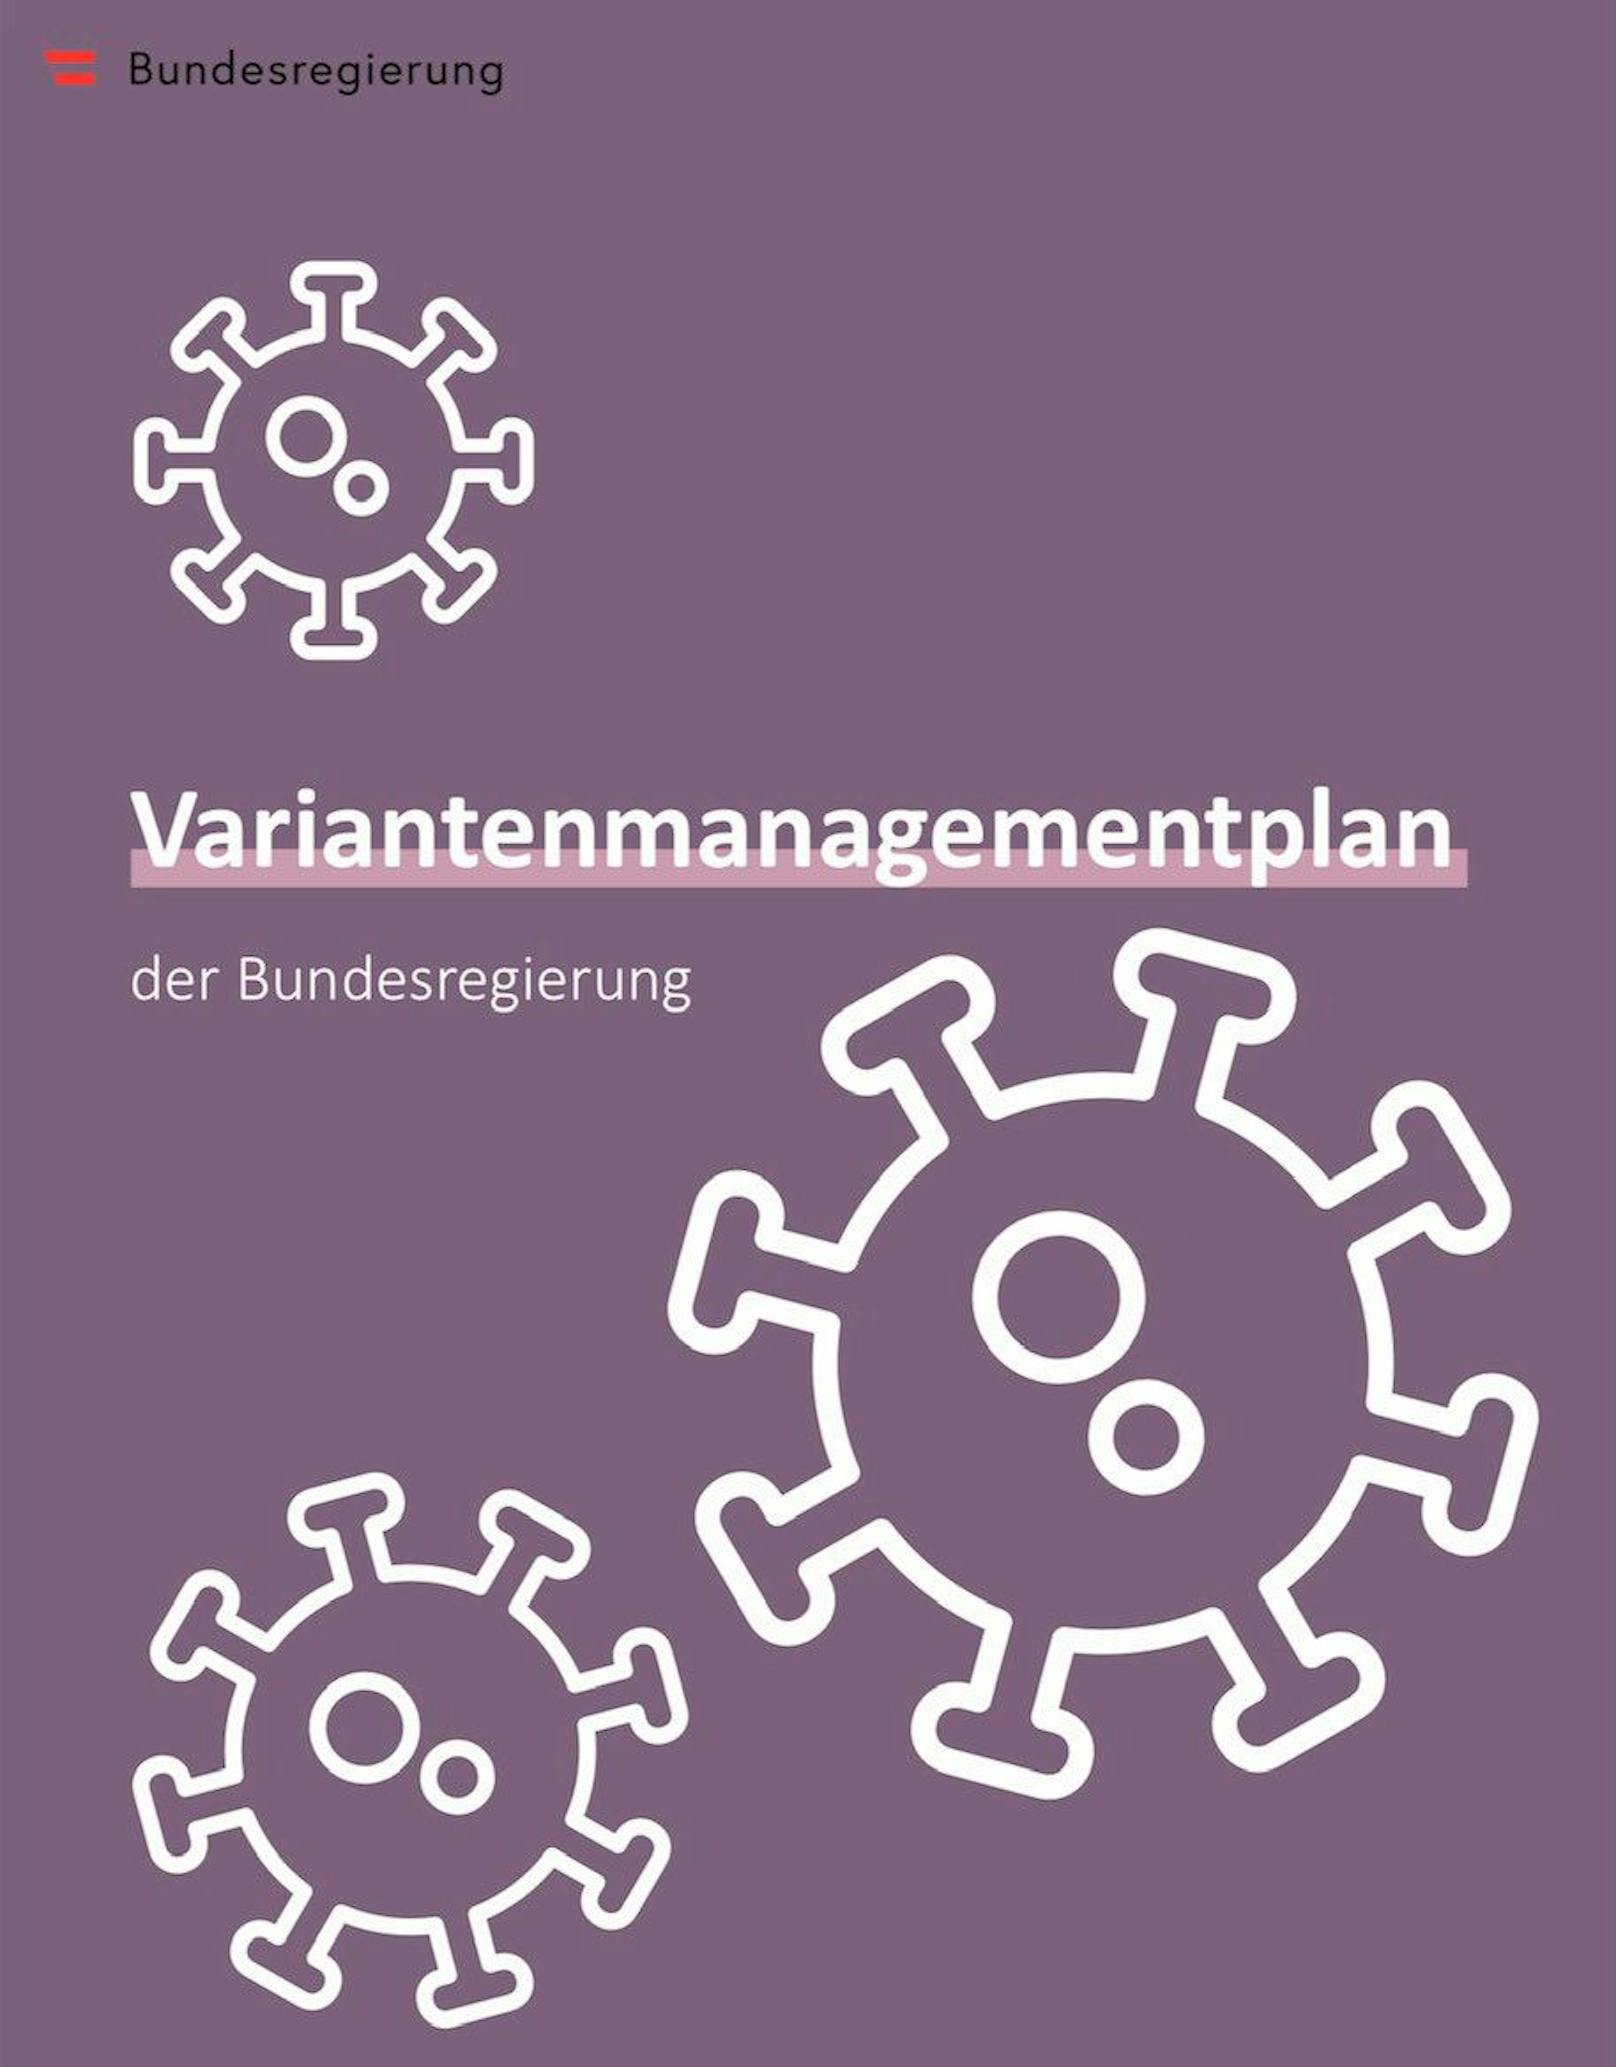 Das Deckblatt des Variantenmanagementplans der Bundesregierung.